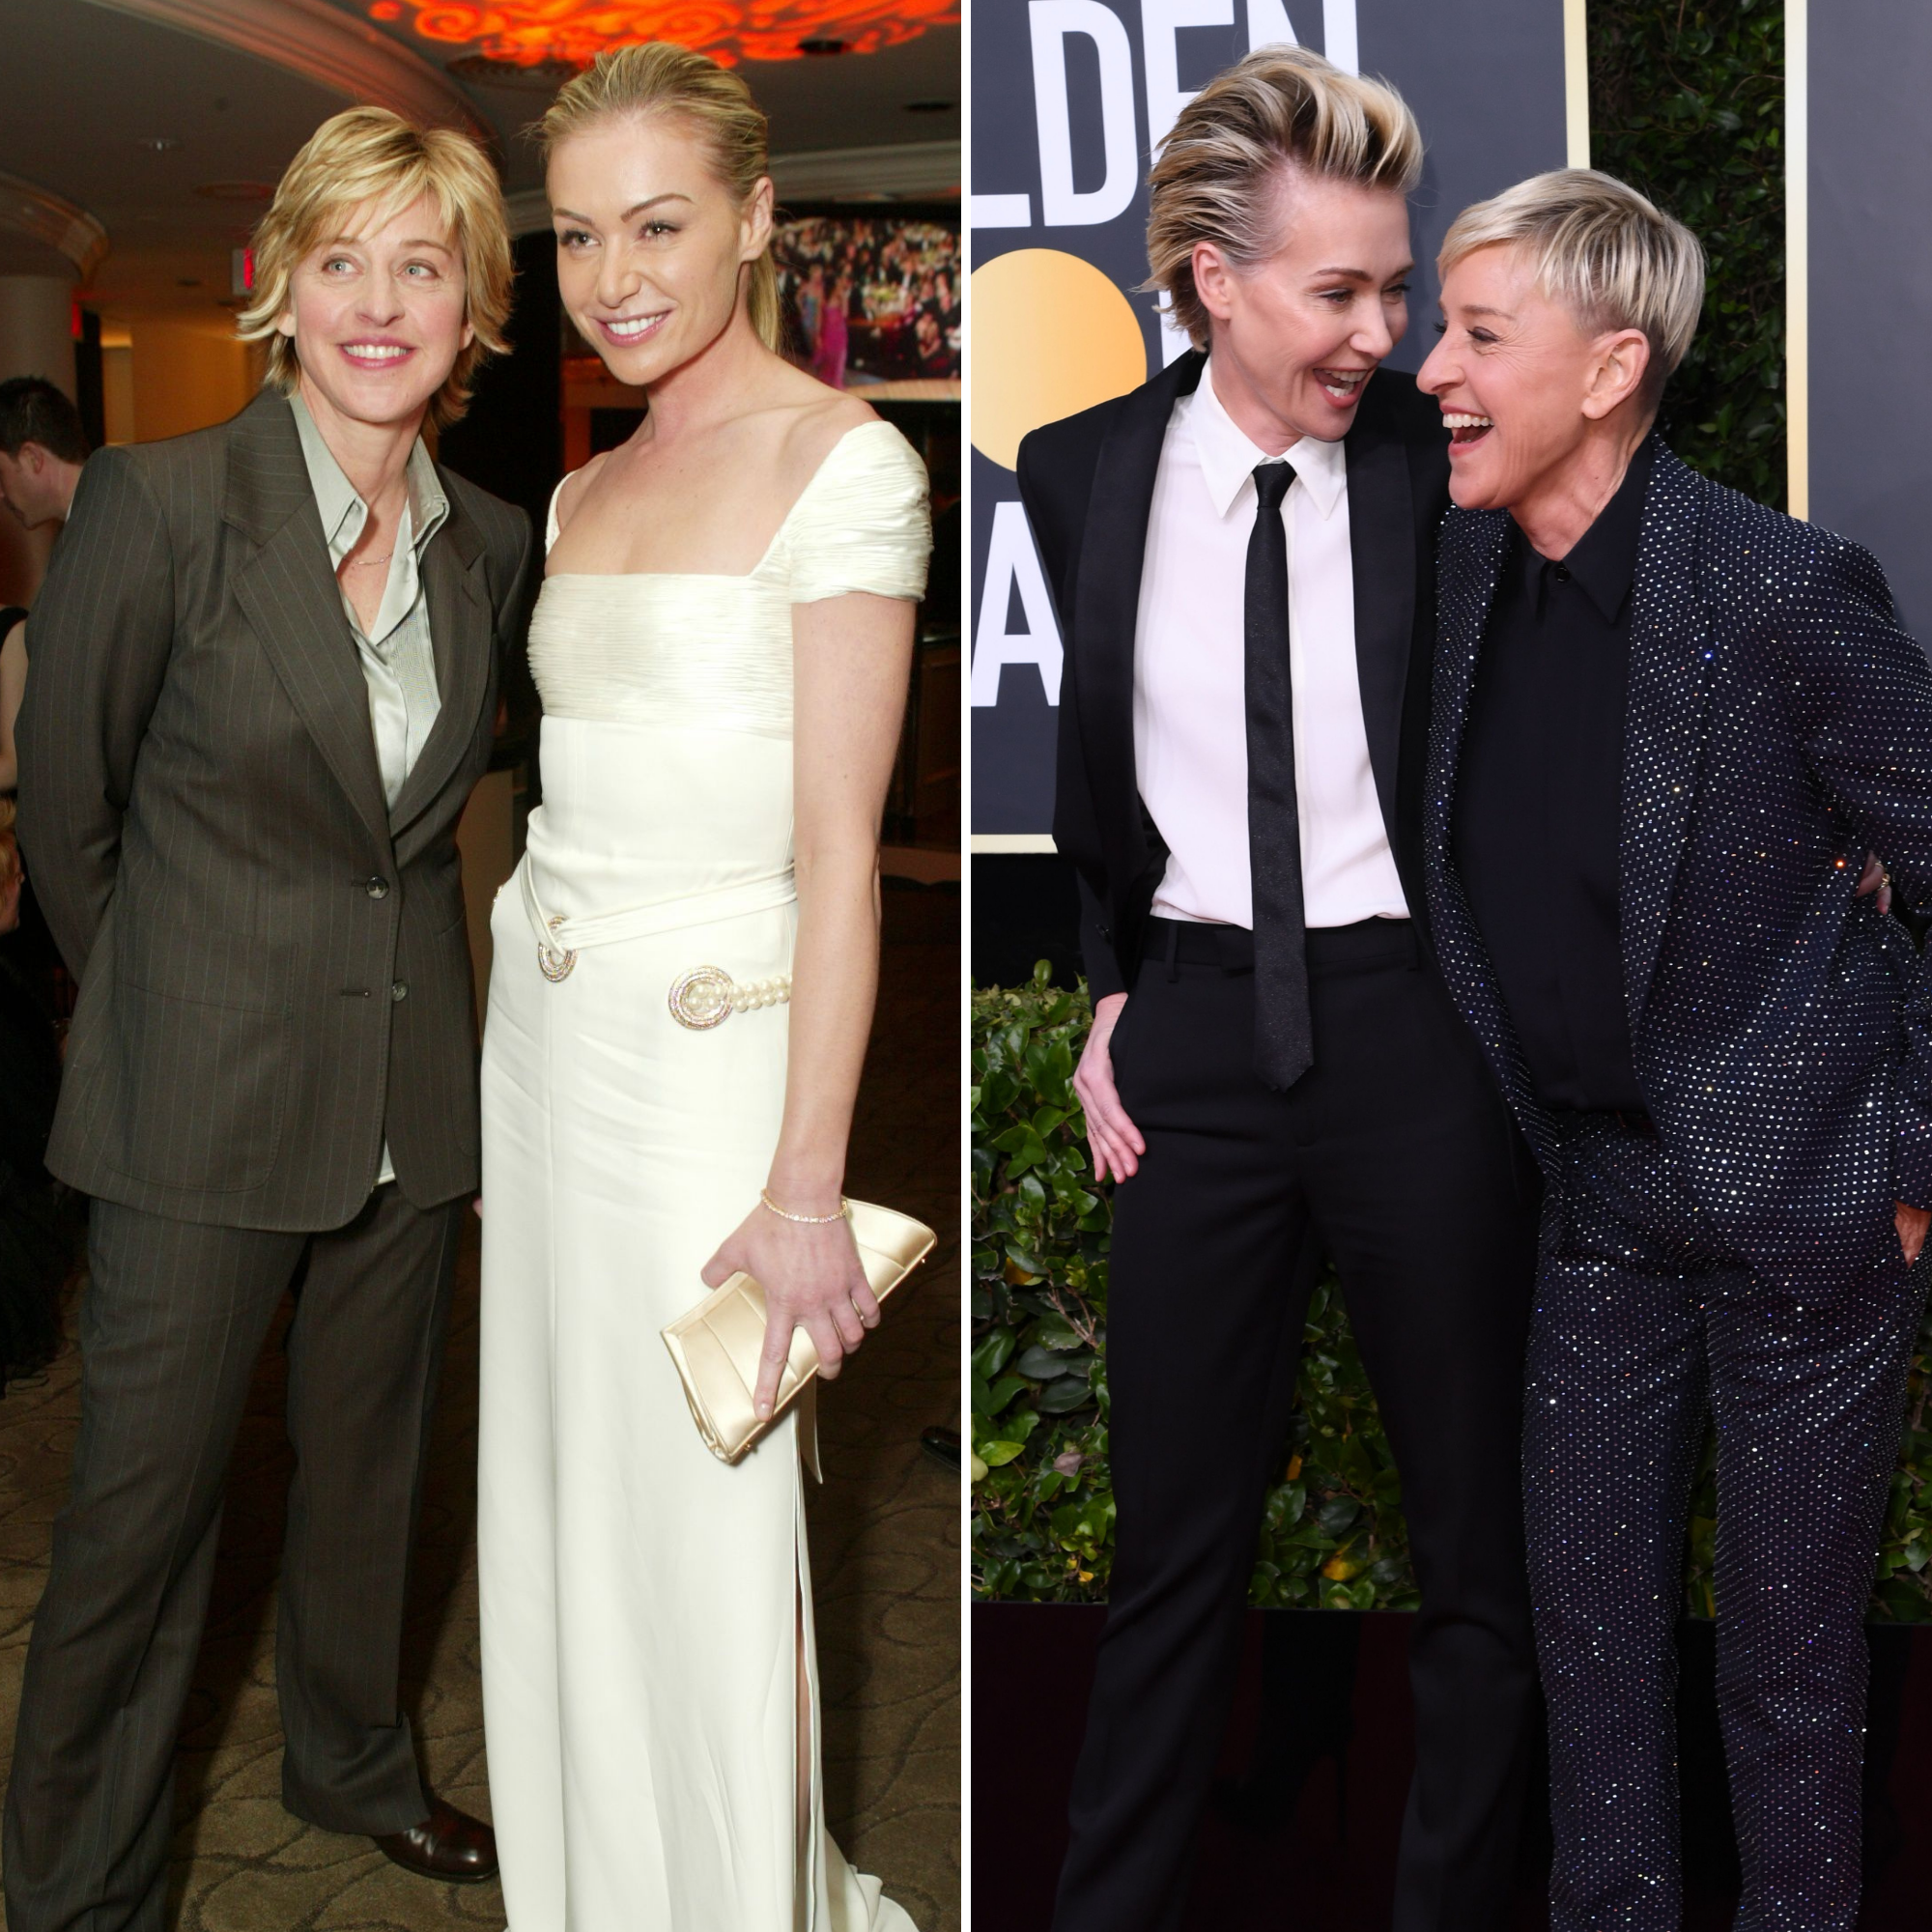 Ellen and portia pics